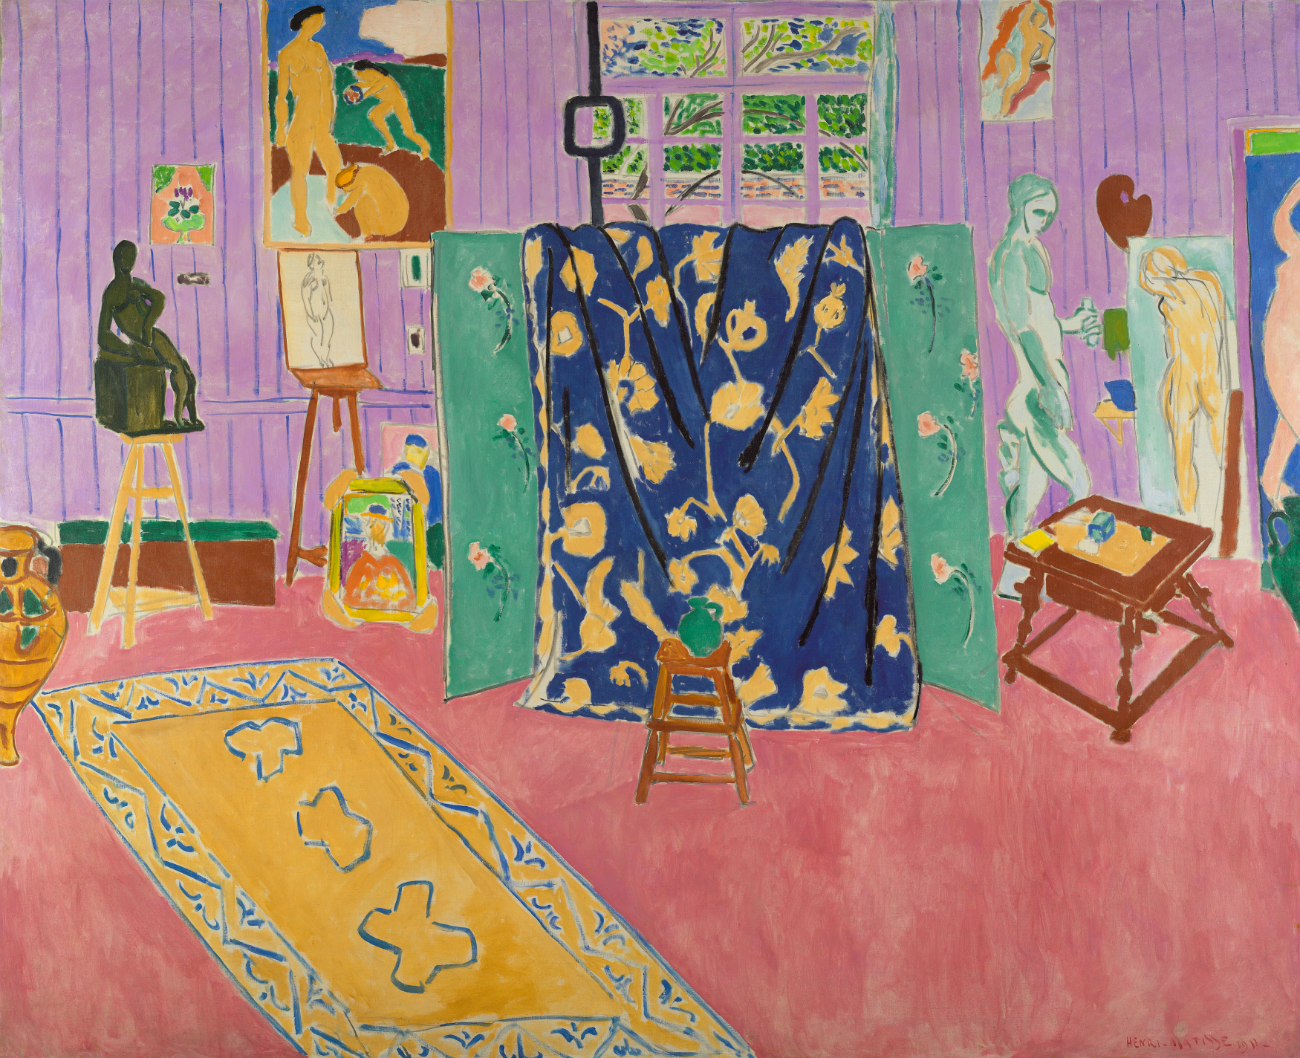 Анри Матисс  «Мастерская художника (Розовая мастерская)». Холст, масло, 1911